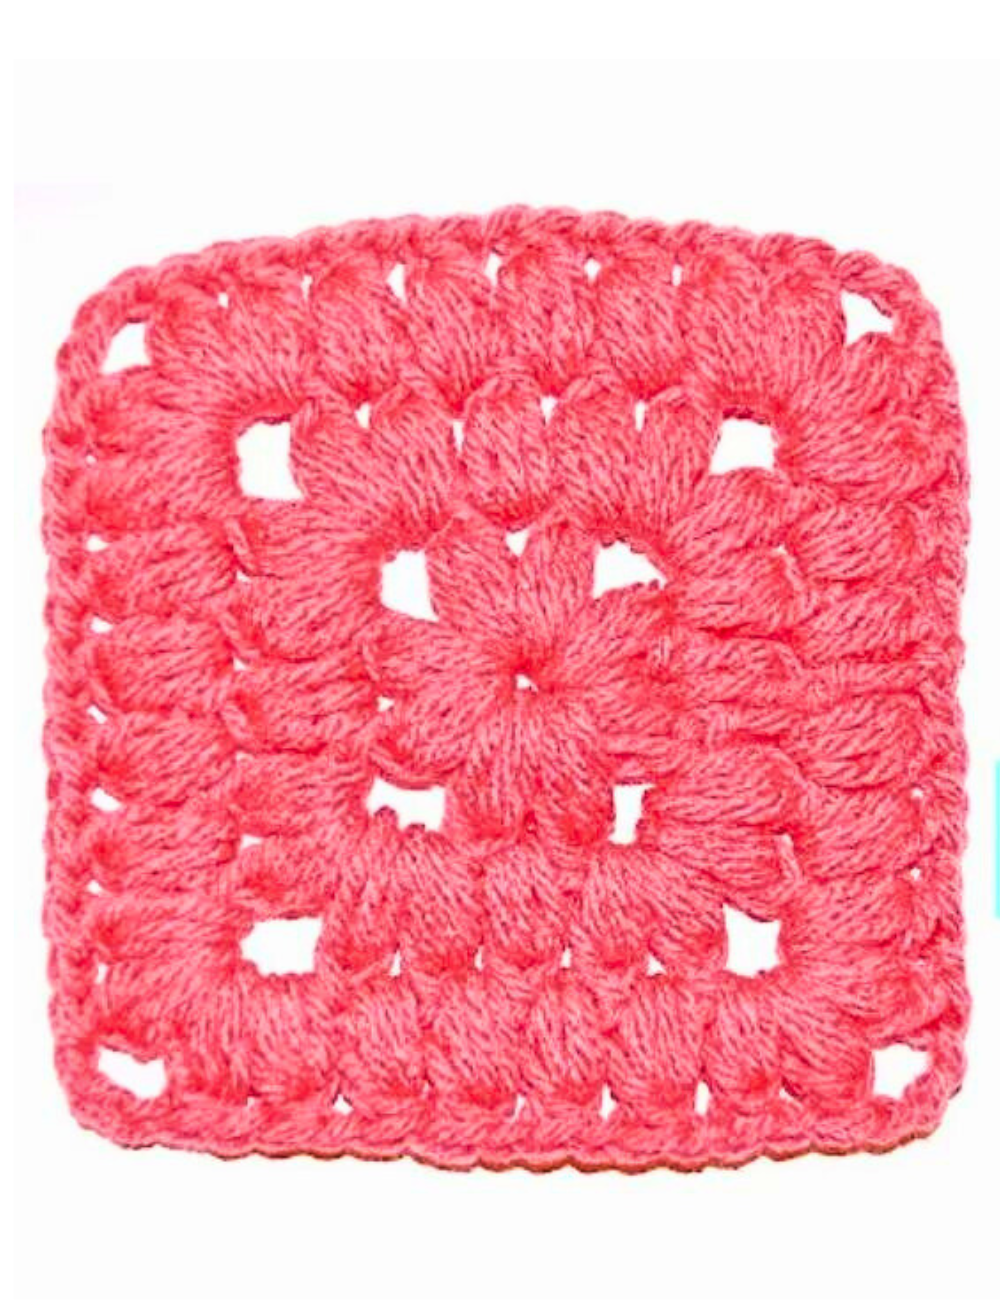 Crochet a Puff Stitch Square